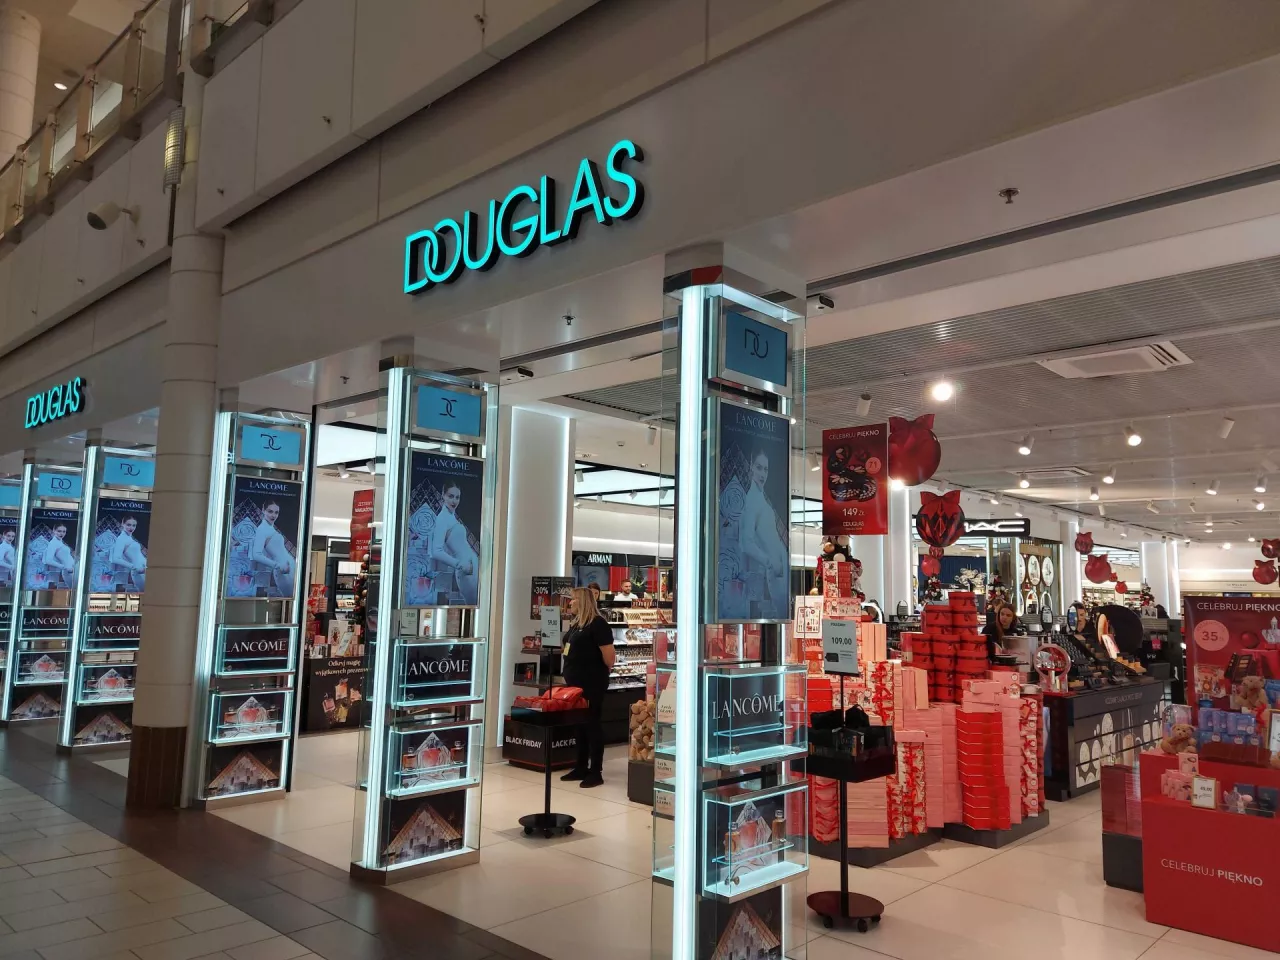 &lt;p&gt;Sieć perfumerii Douglas na stałe zagościła już w polskim krajobrazie.&lt;/p&gt;